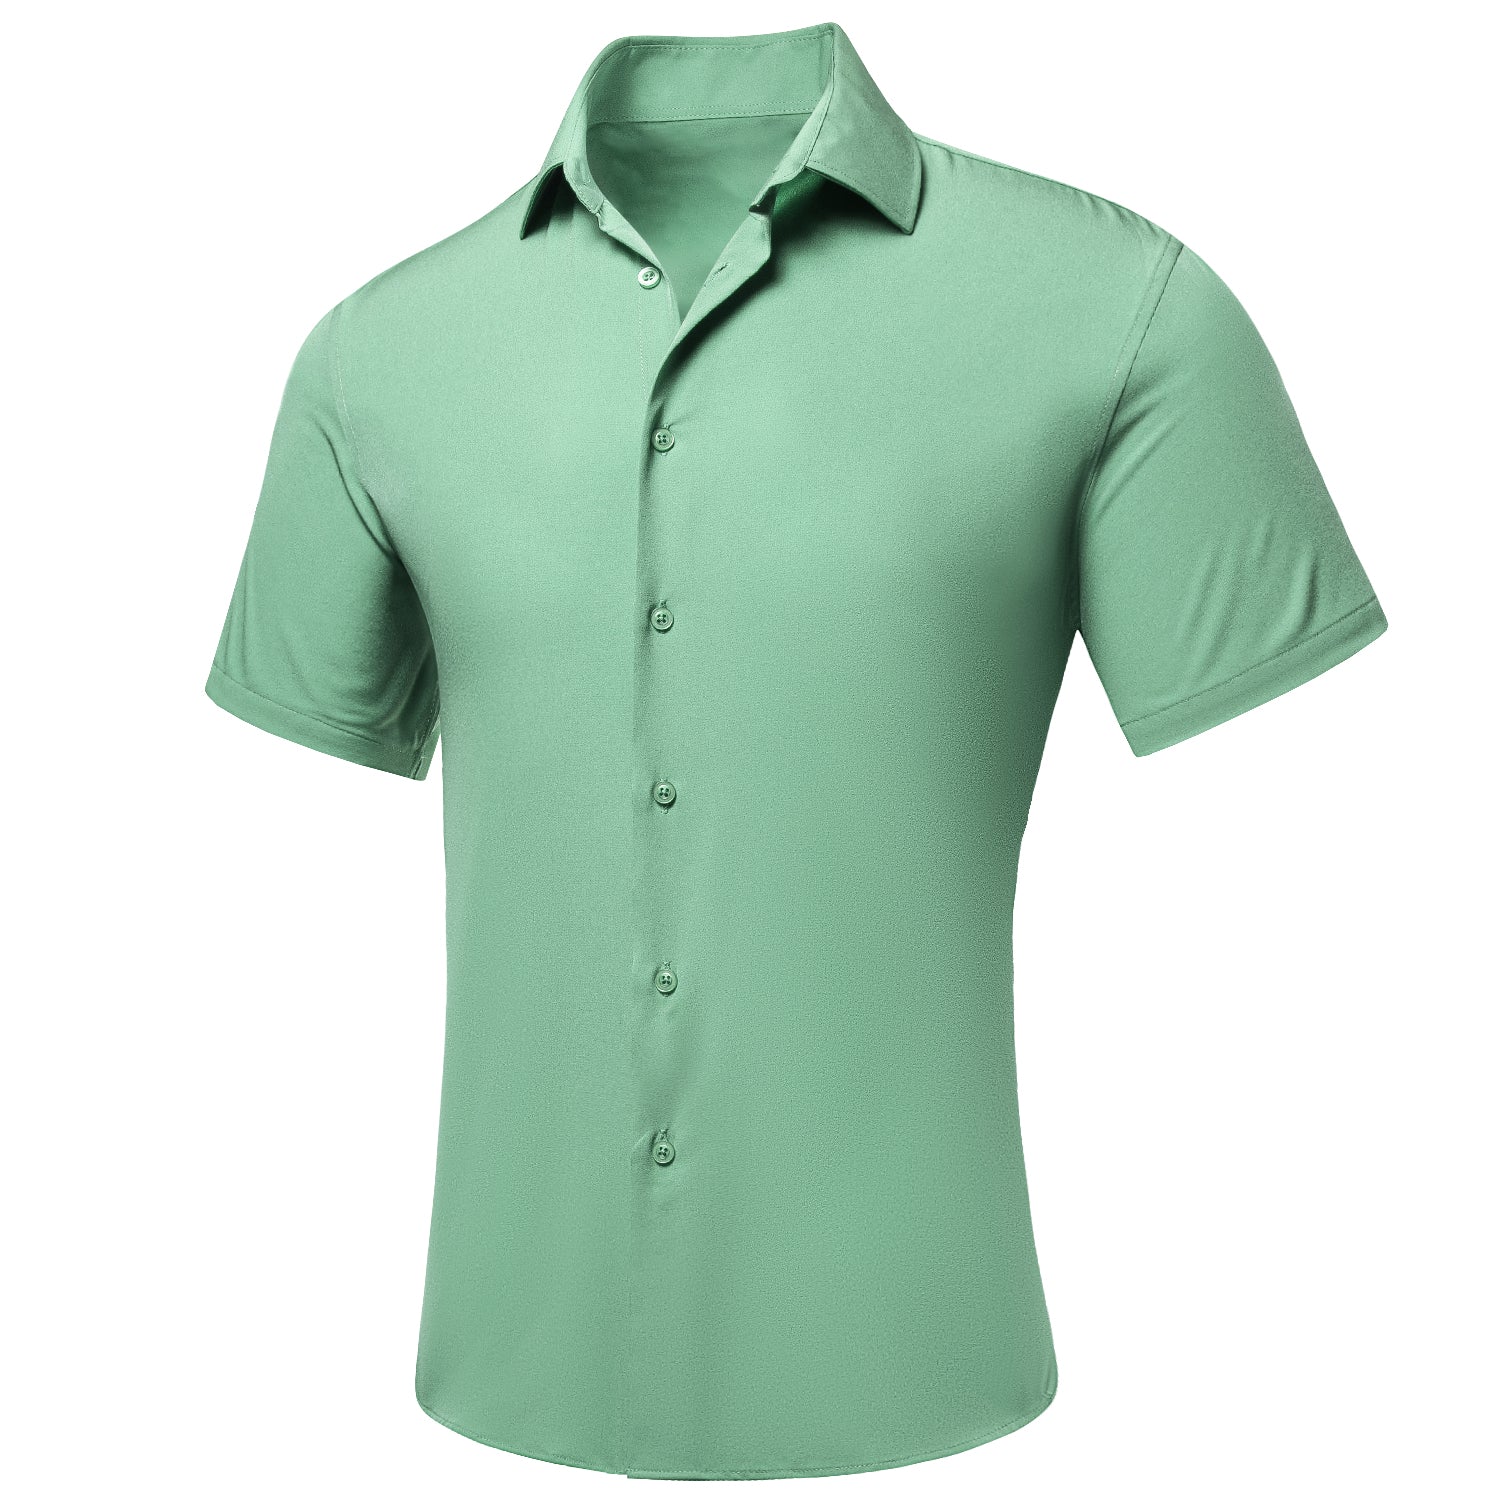 Mint Green Solid Silk Men's Short Sleeve Shirt